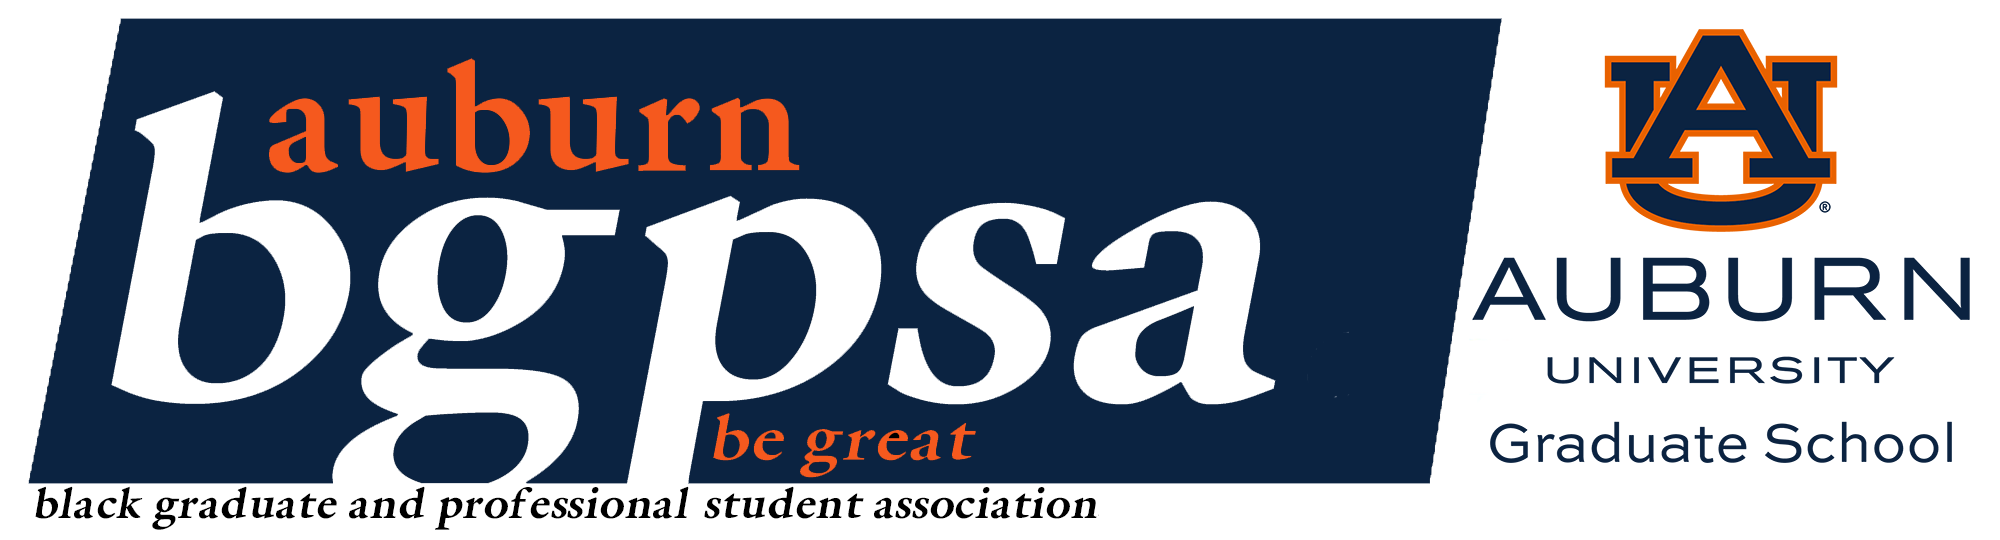 AU BGPSA logo banner